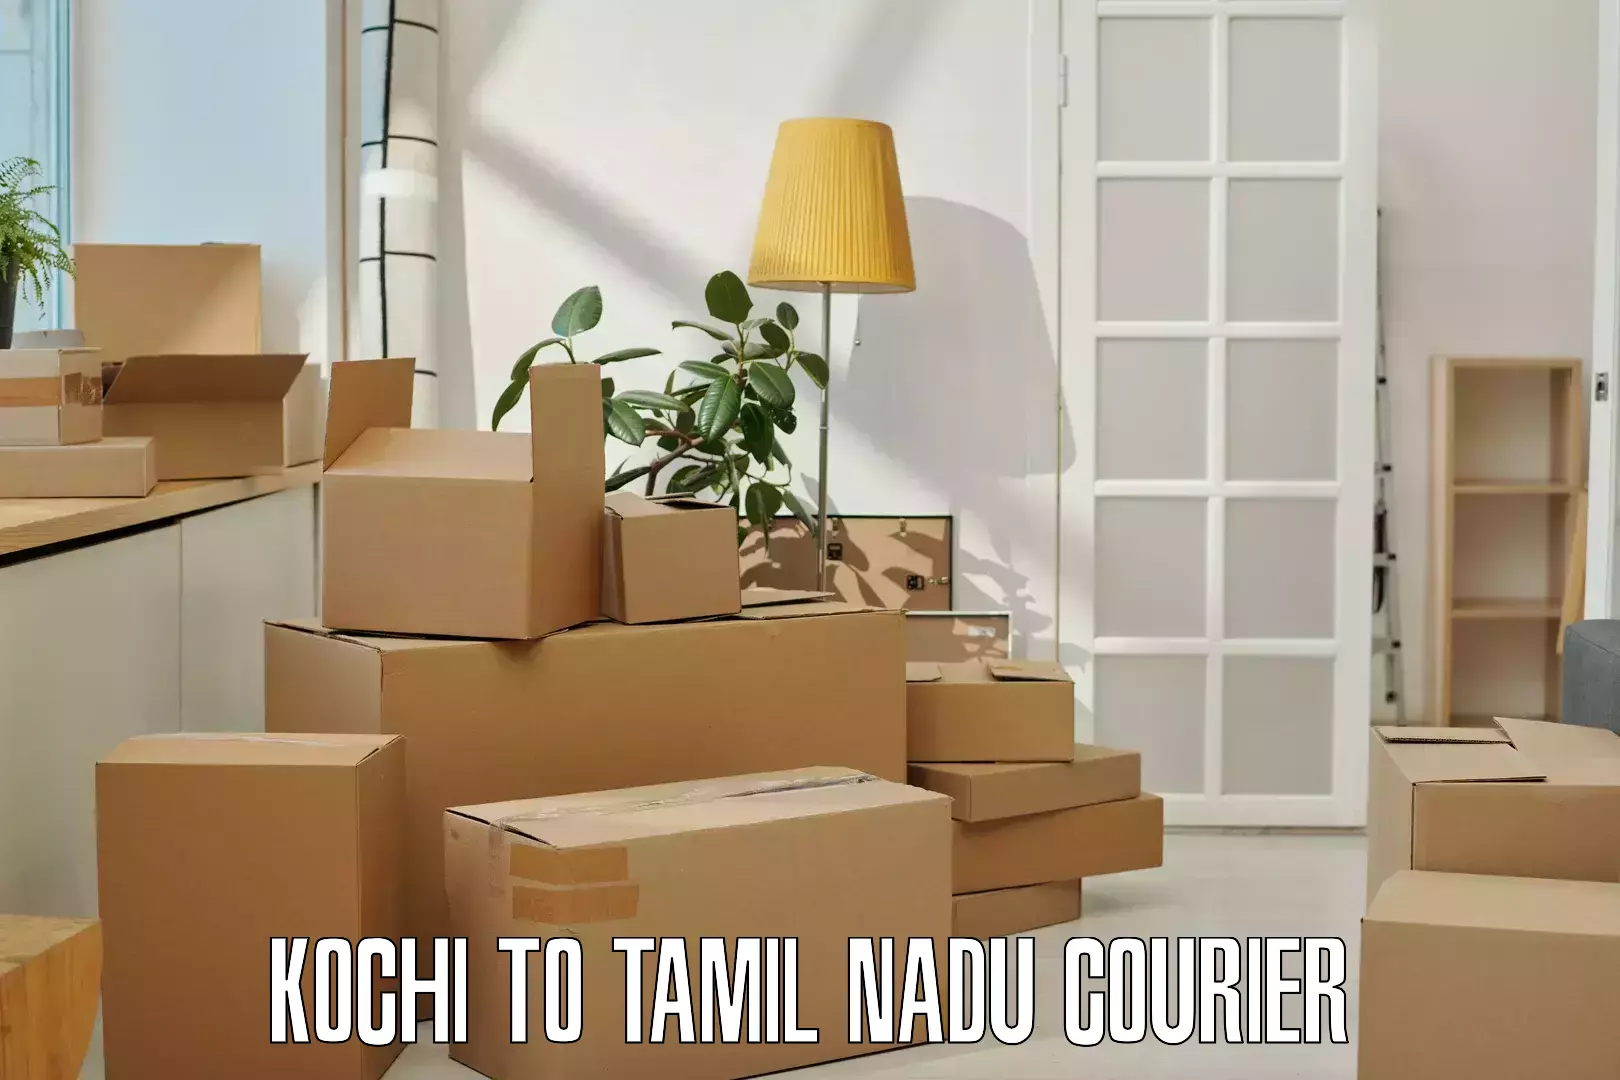 Overnight delivery services Kochi to Madurai